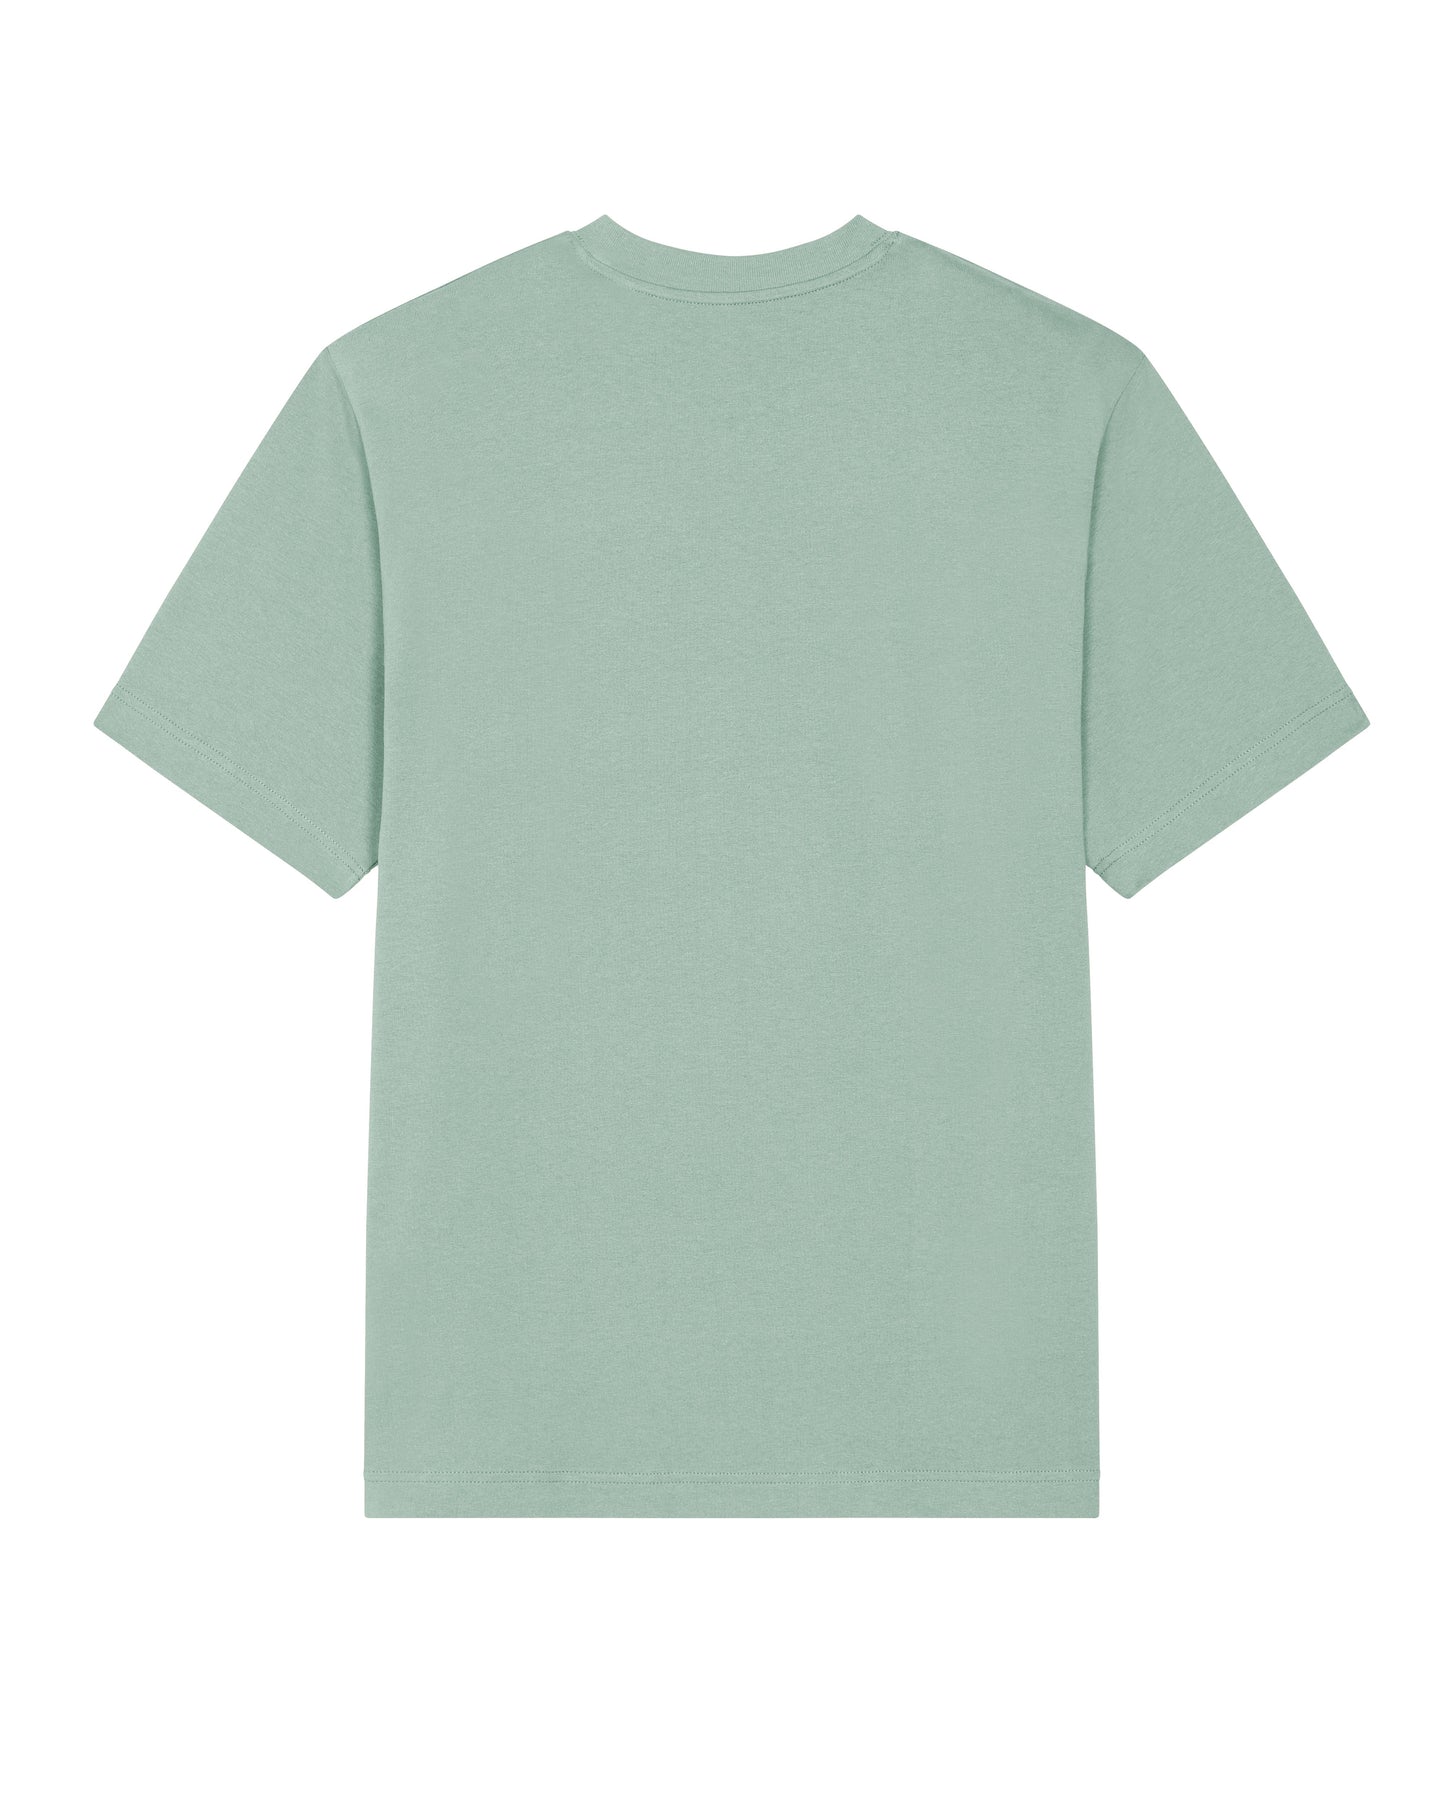 
                  
                    Wild Spirit T-Shirt - Mint Green
                  
                